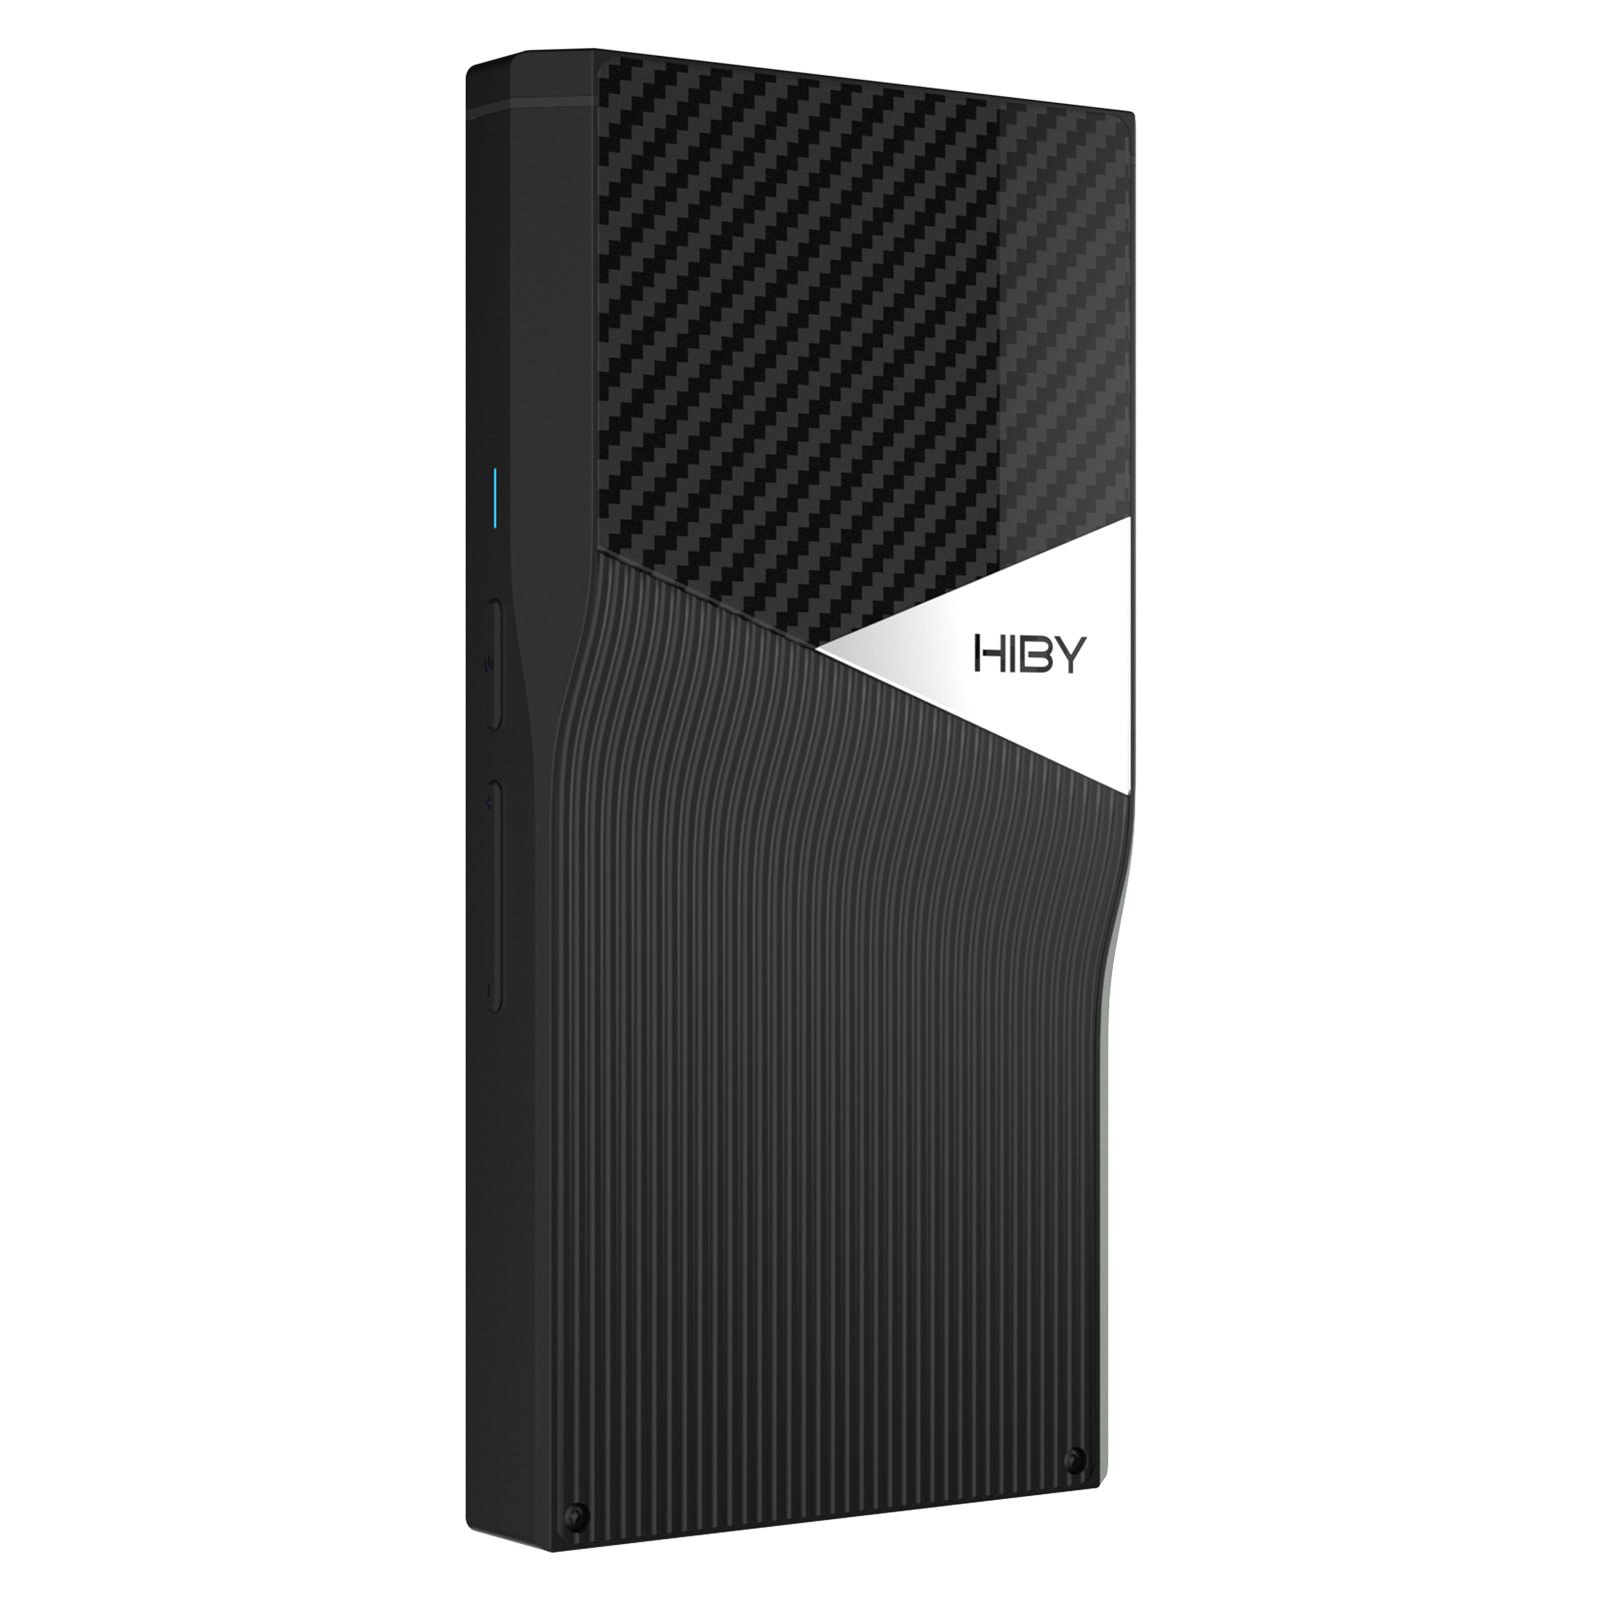 (国内未発売) Hiby R6 Pro II ブラック